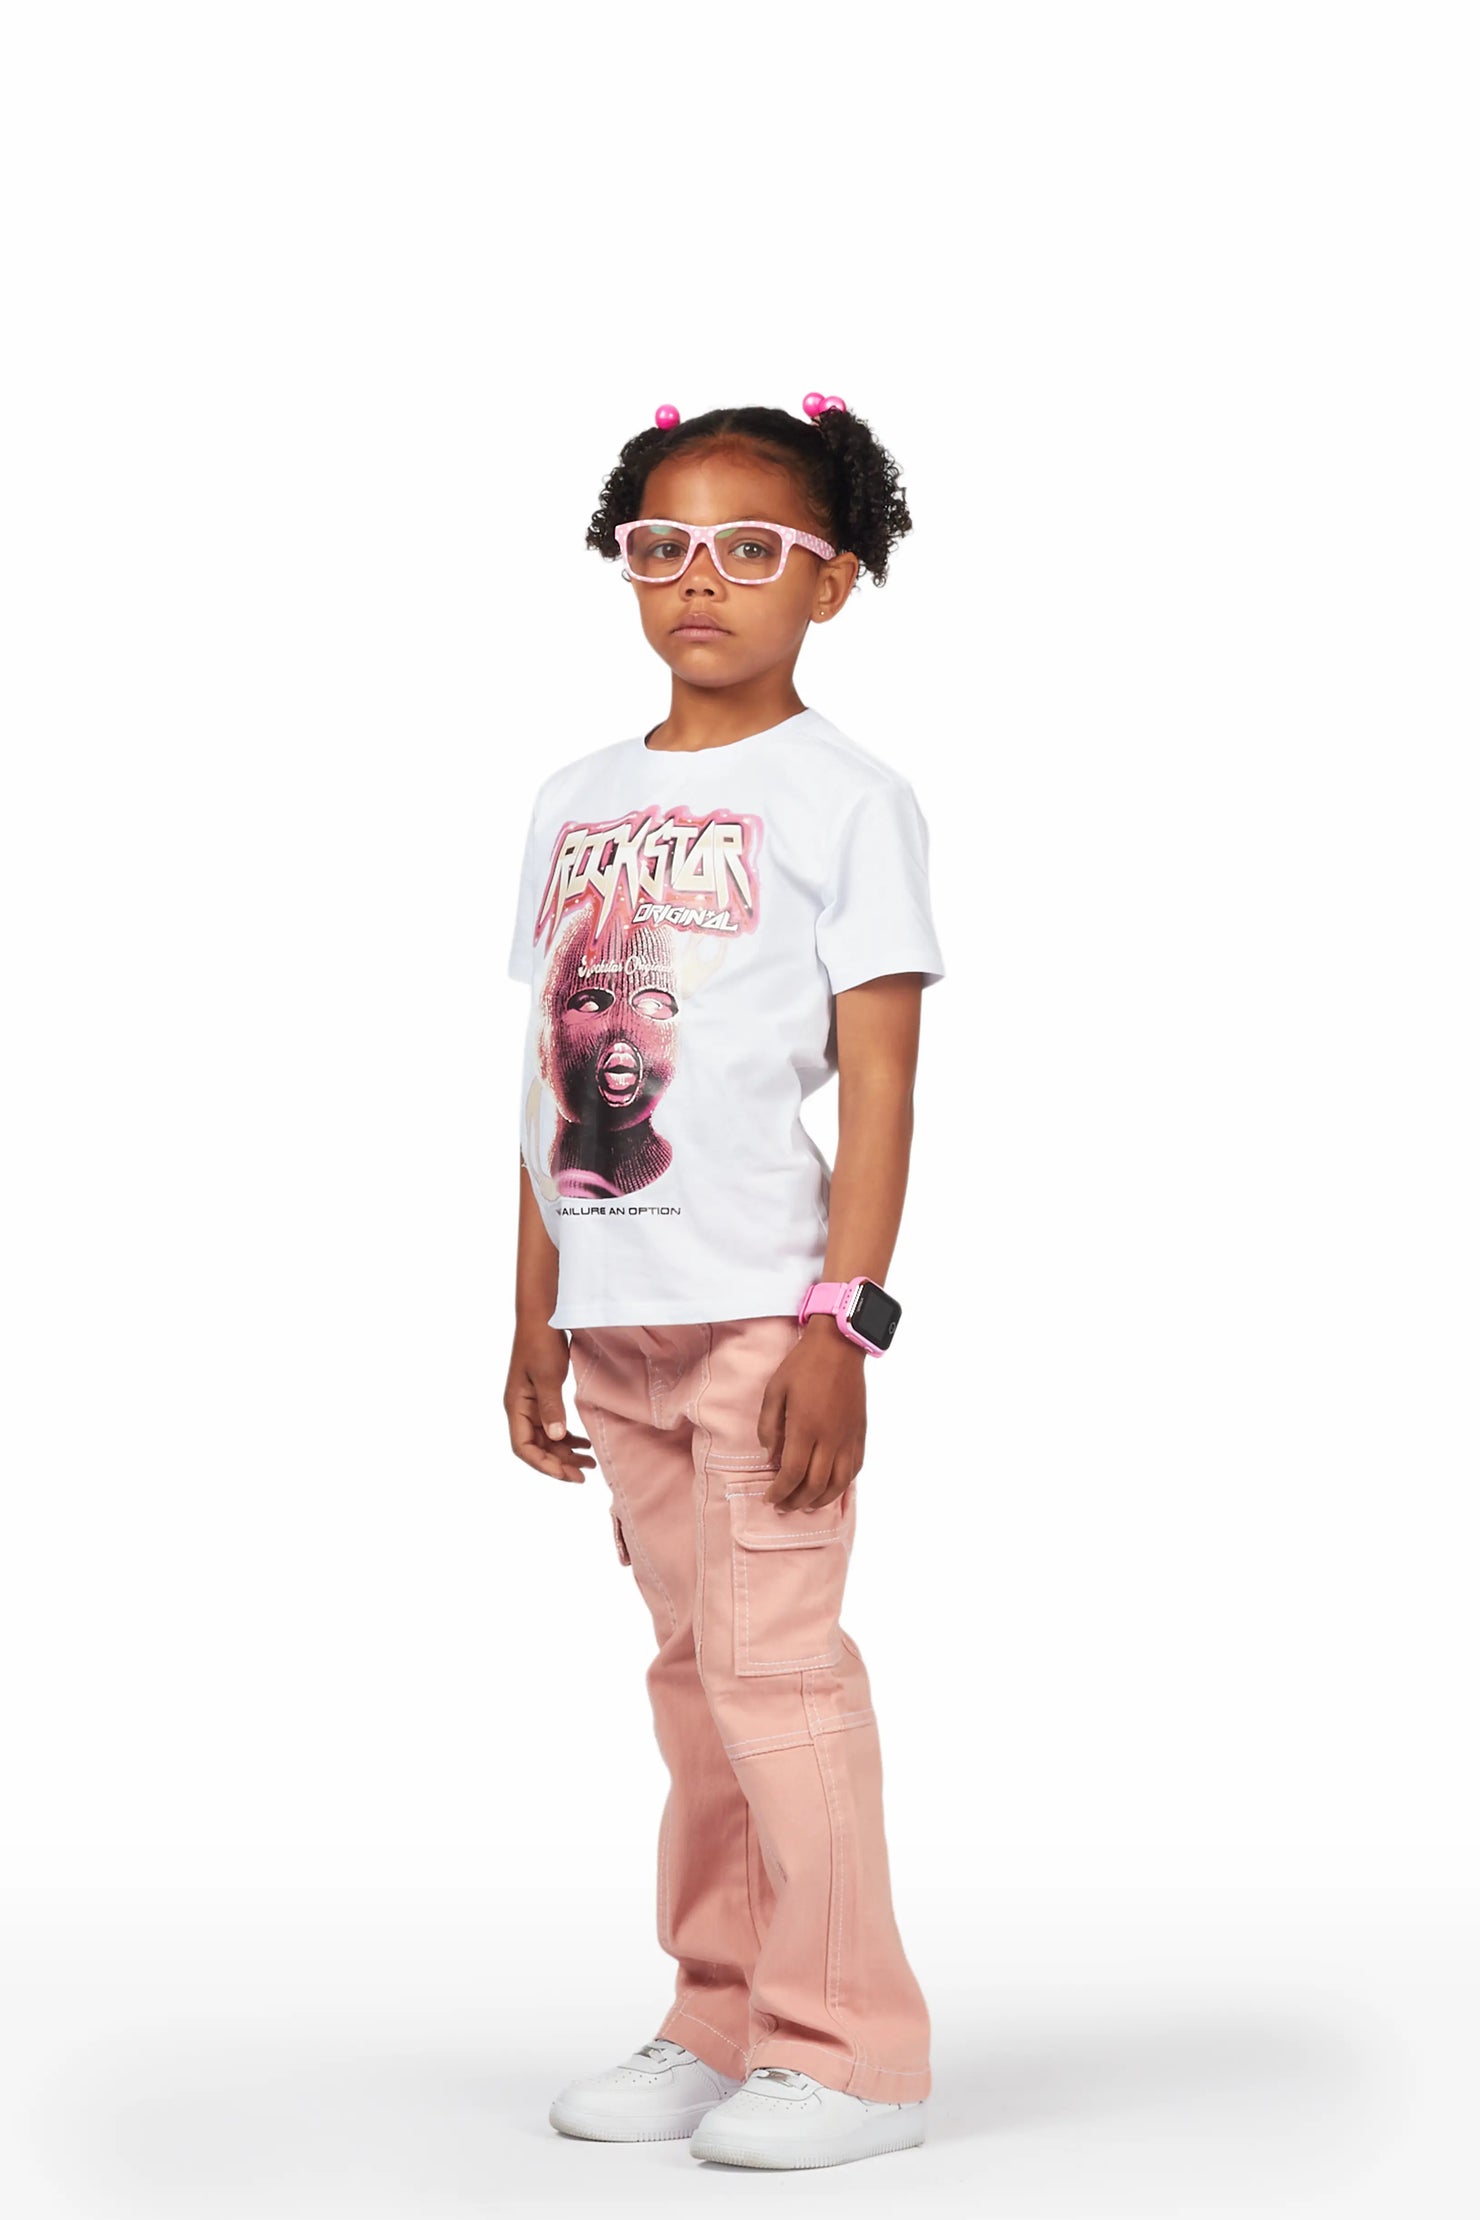 Girls Karasi White/Pink T-Shirt/Jean Set